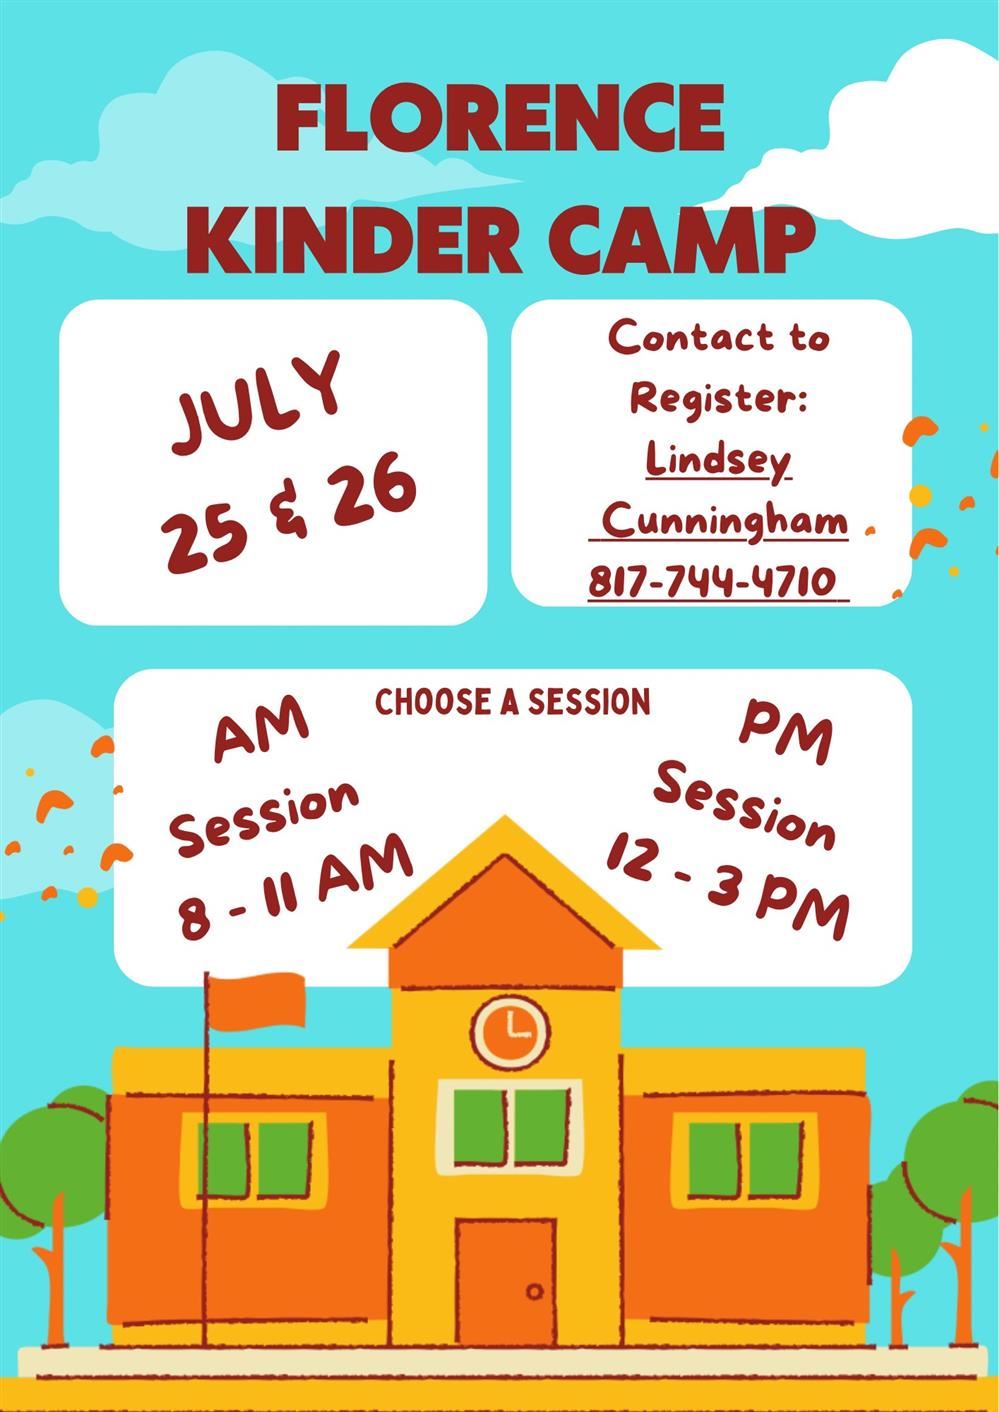  FES Kinder Camp - July 25 & 26